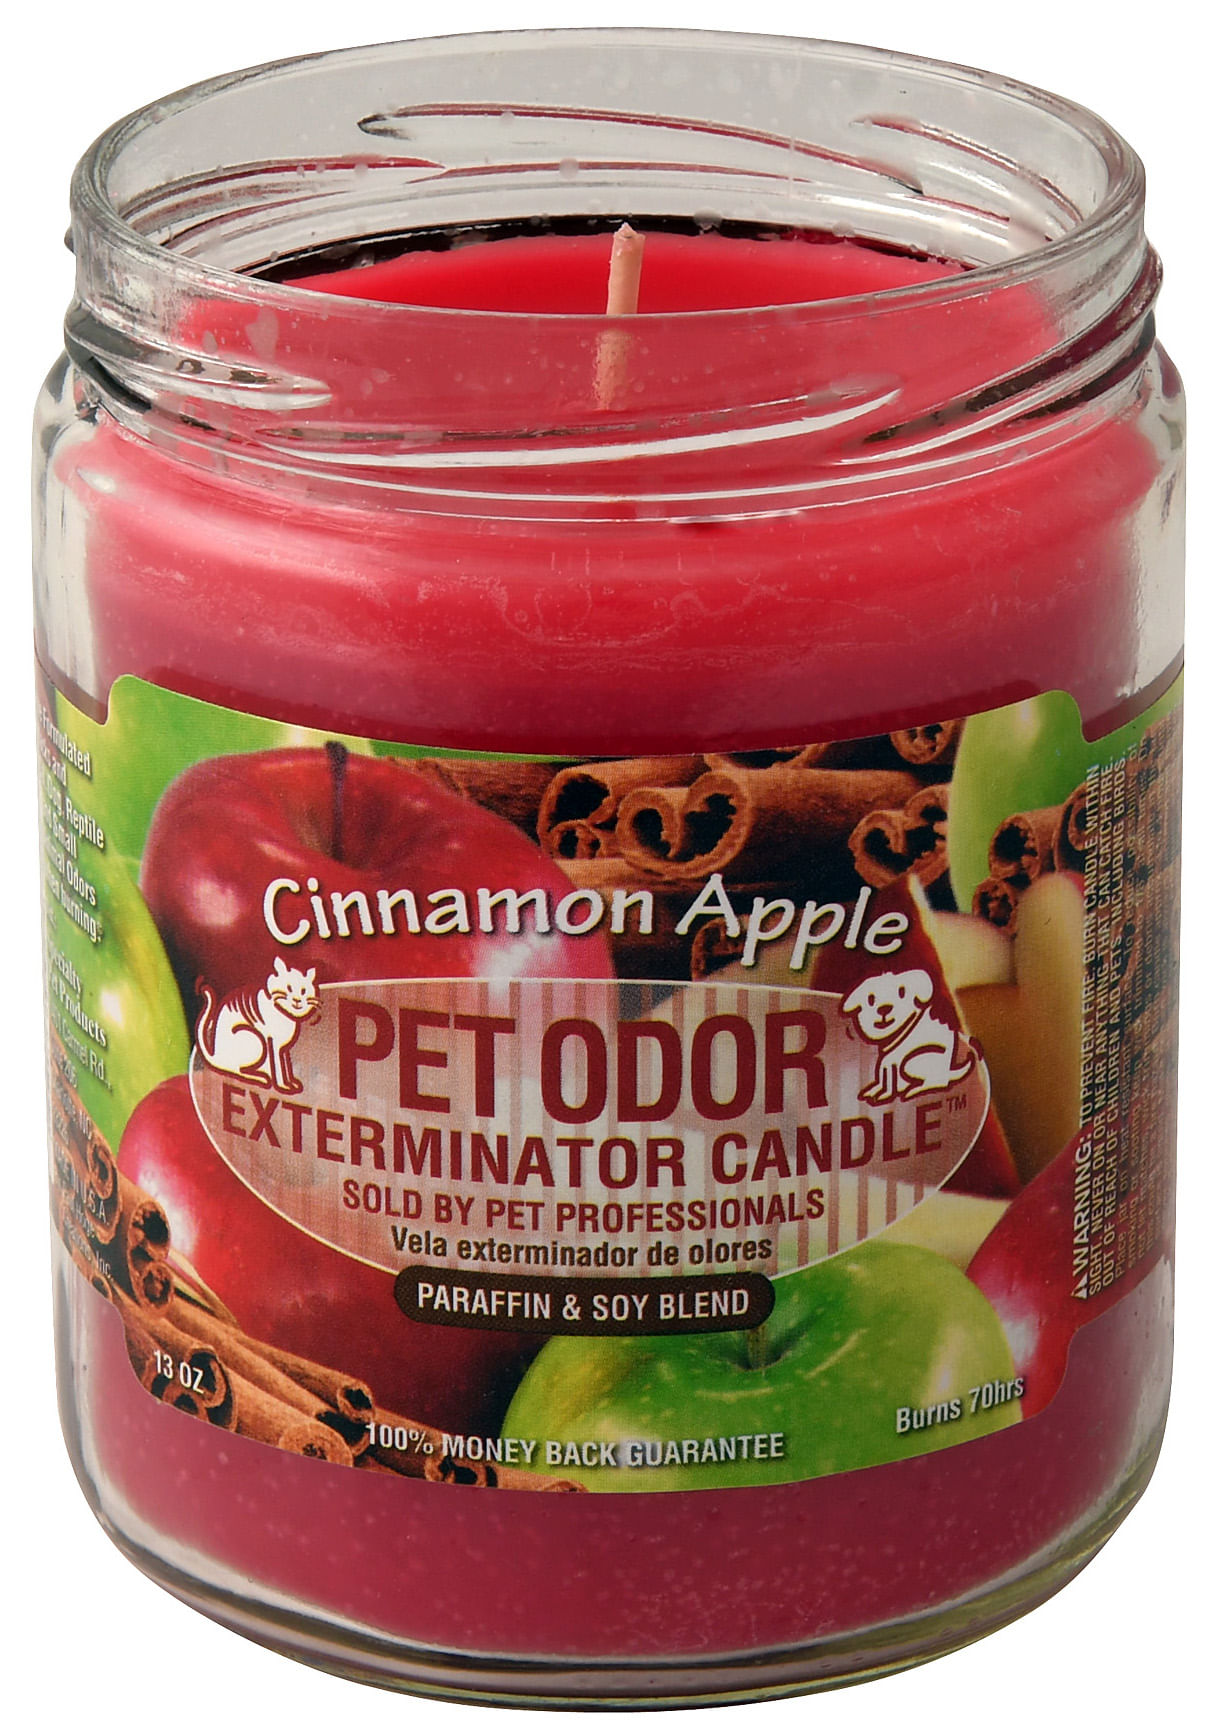 Pet Odor Exterminator Candle, Cinnamon Apple - Jeffers